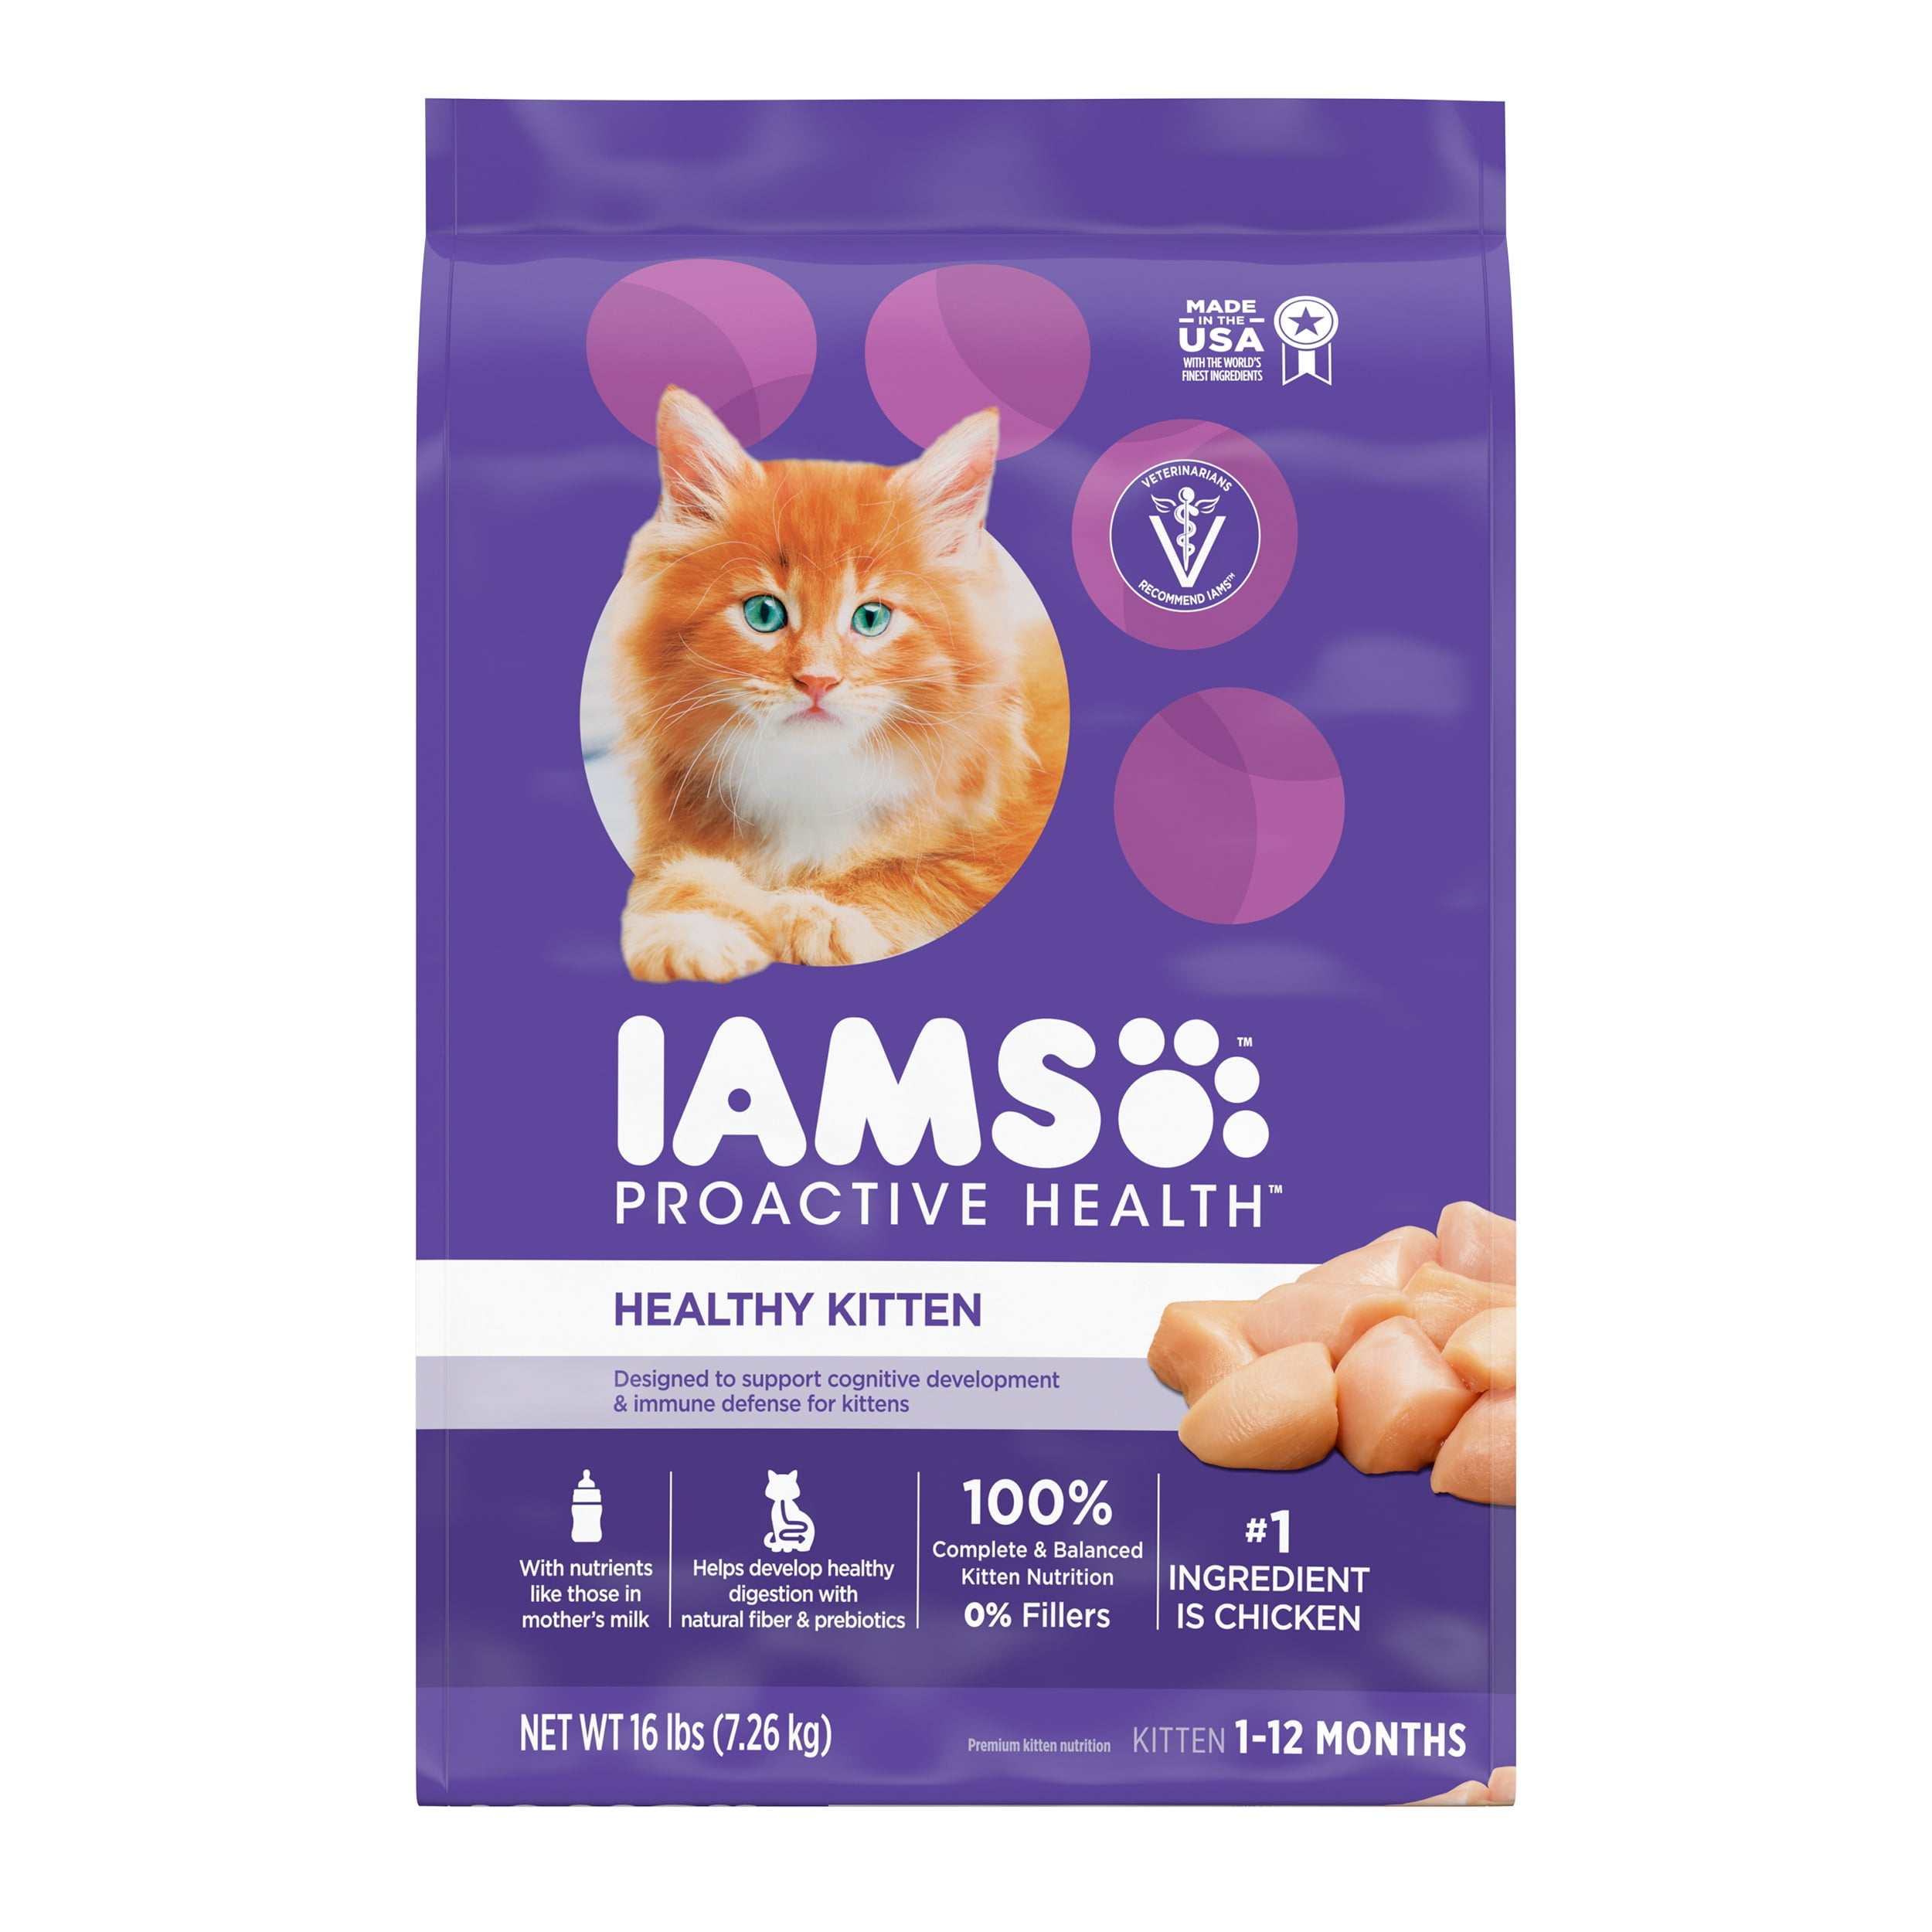 Is Iams Proactive Health Cat Food Good